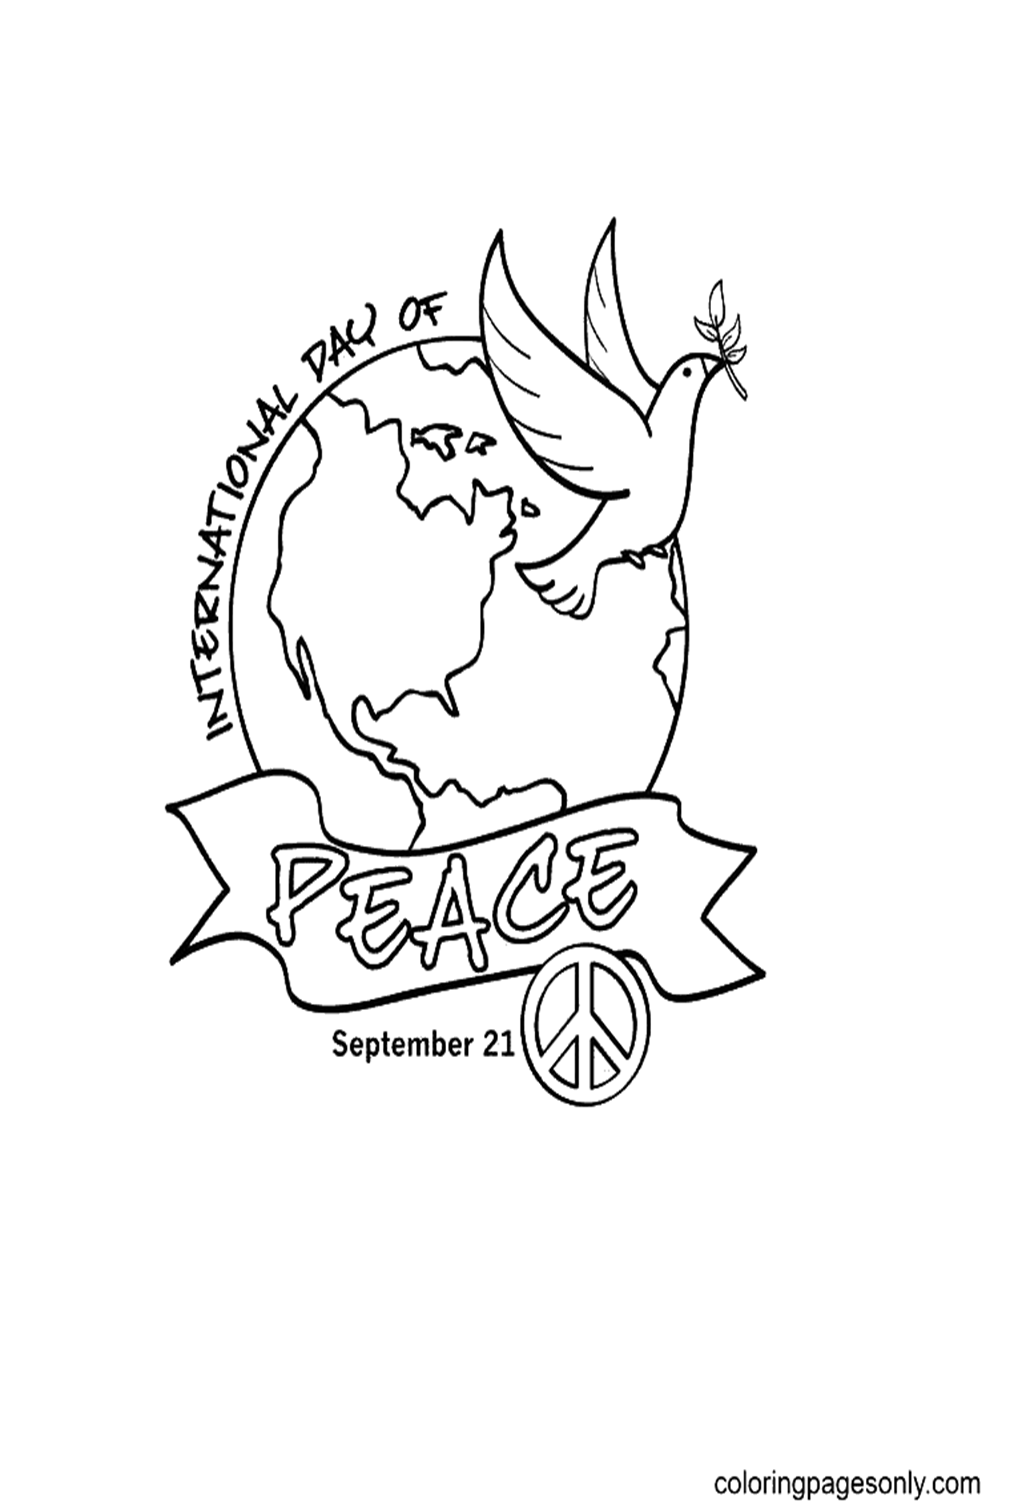 اليوم العالمي للسلام من اليوم العالمي للسلام